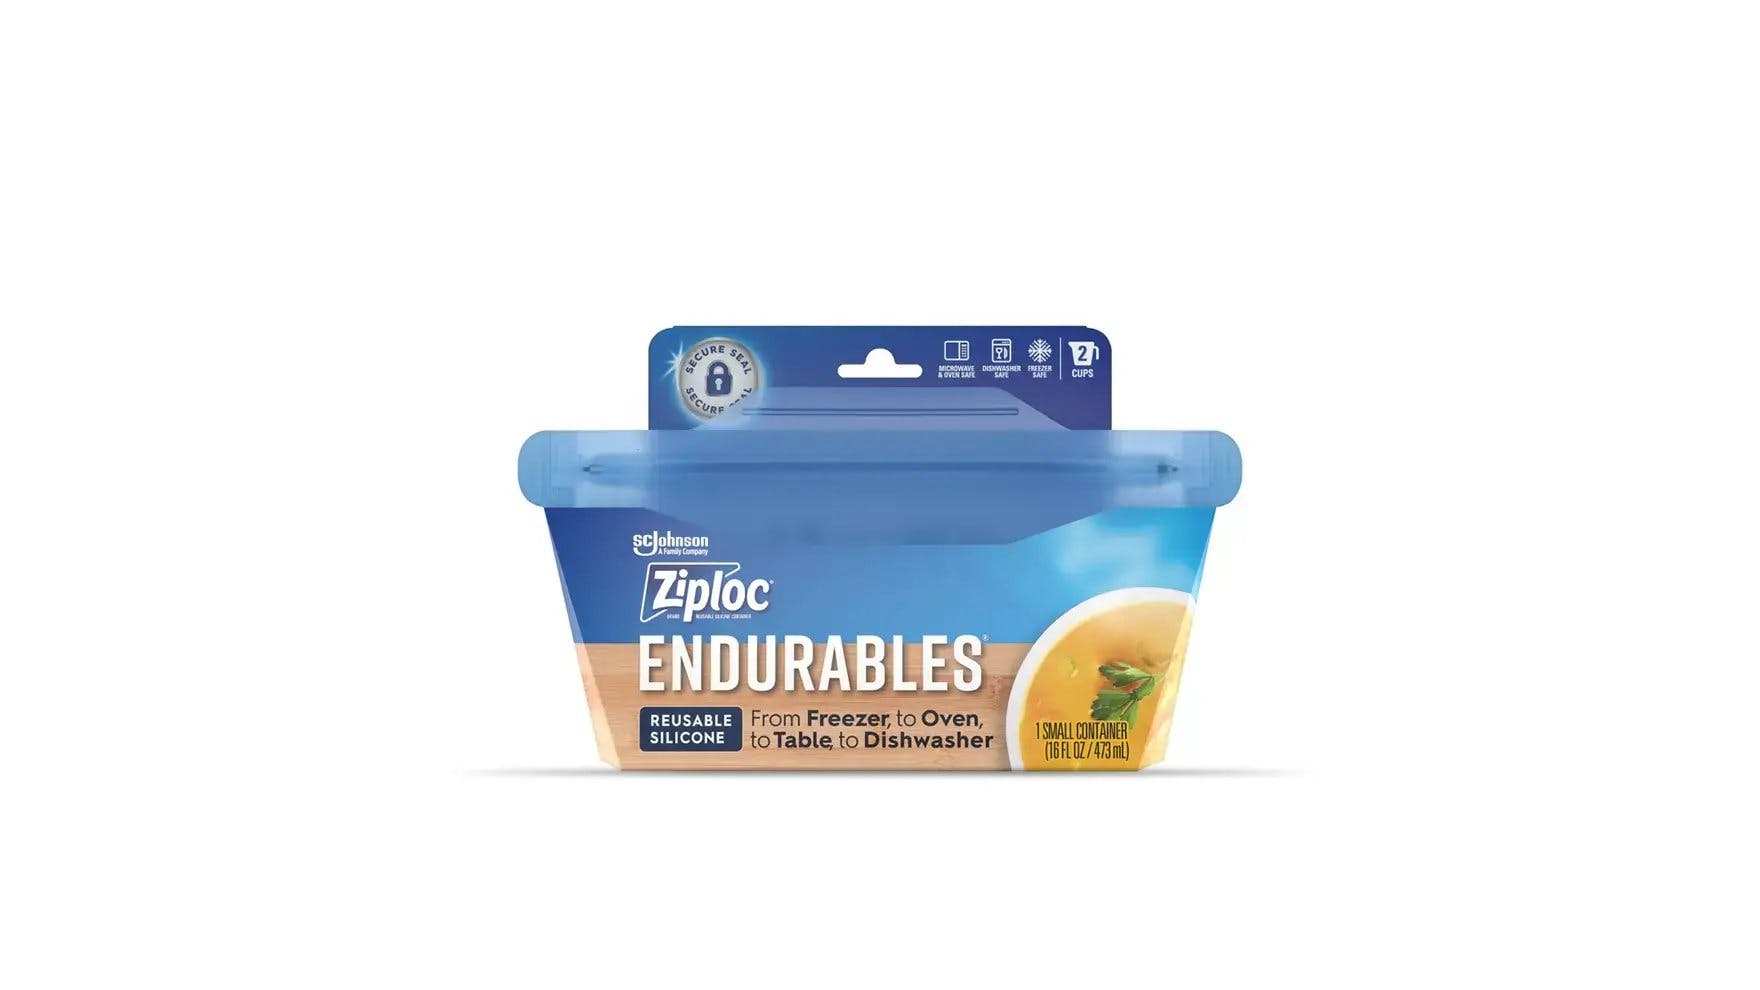 Ziploc® Endurables™ Medium Pouch, 2 cups, 16 fl Oz, Reusable